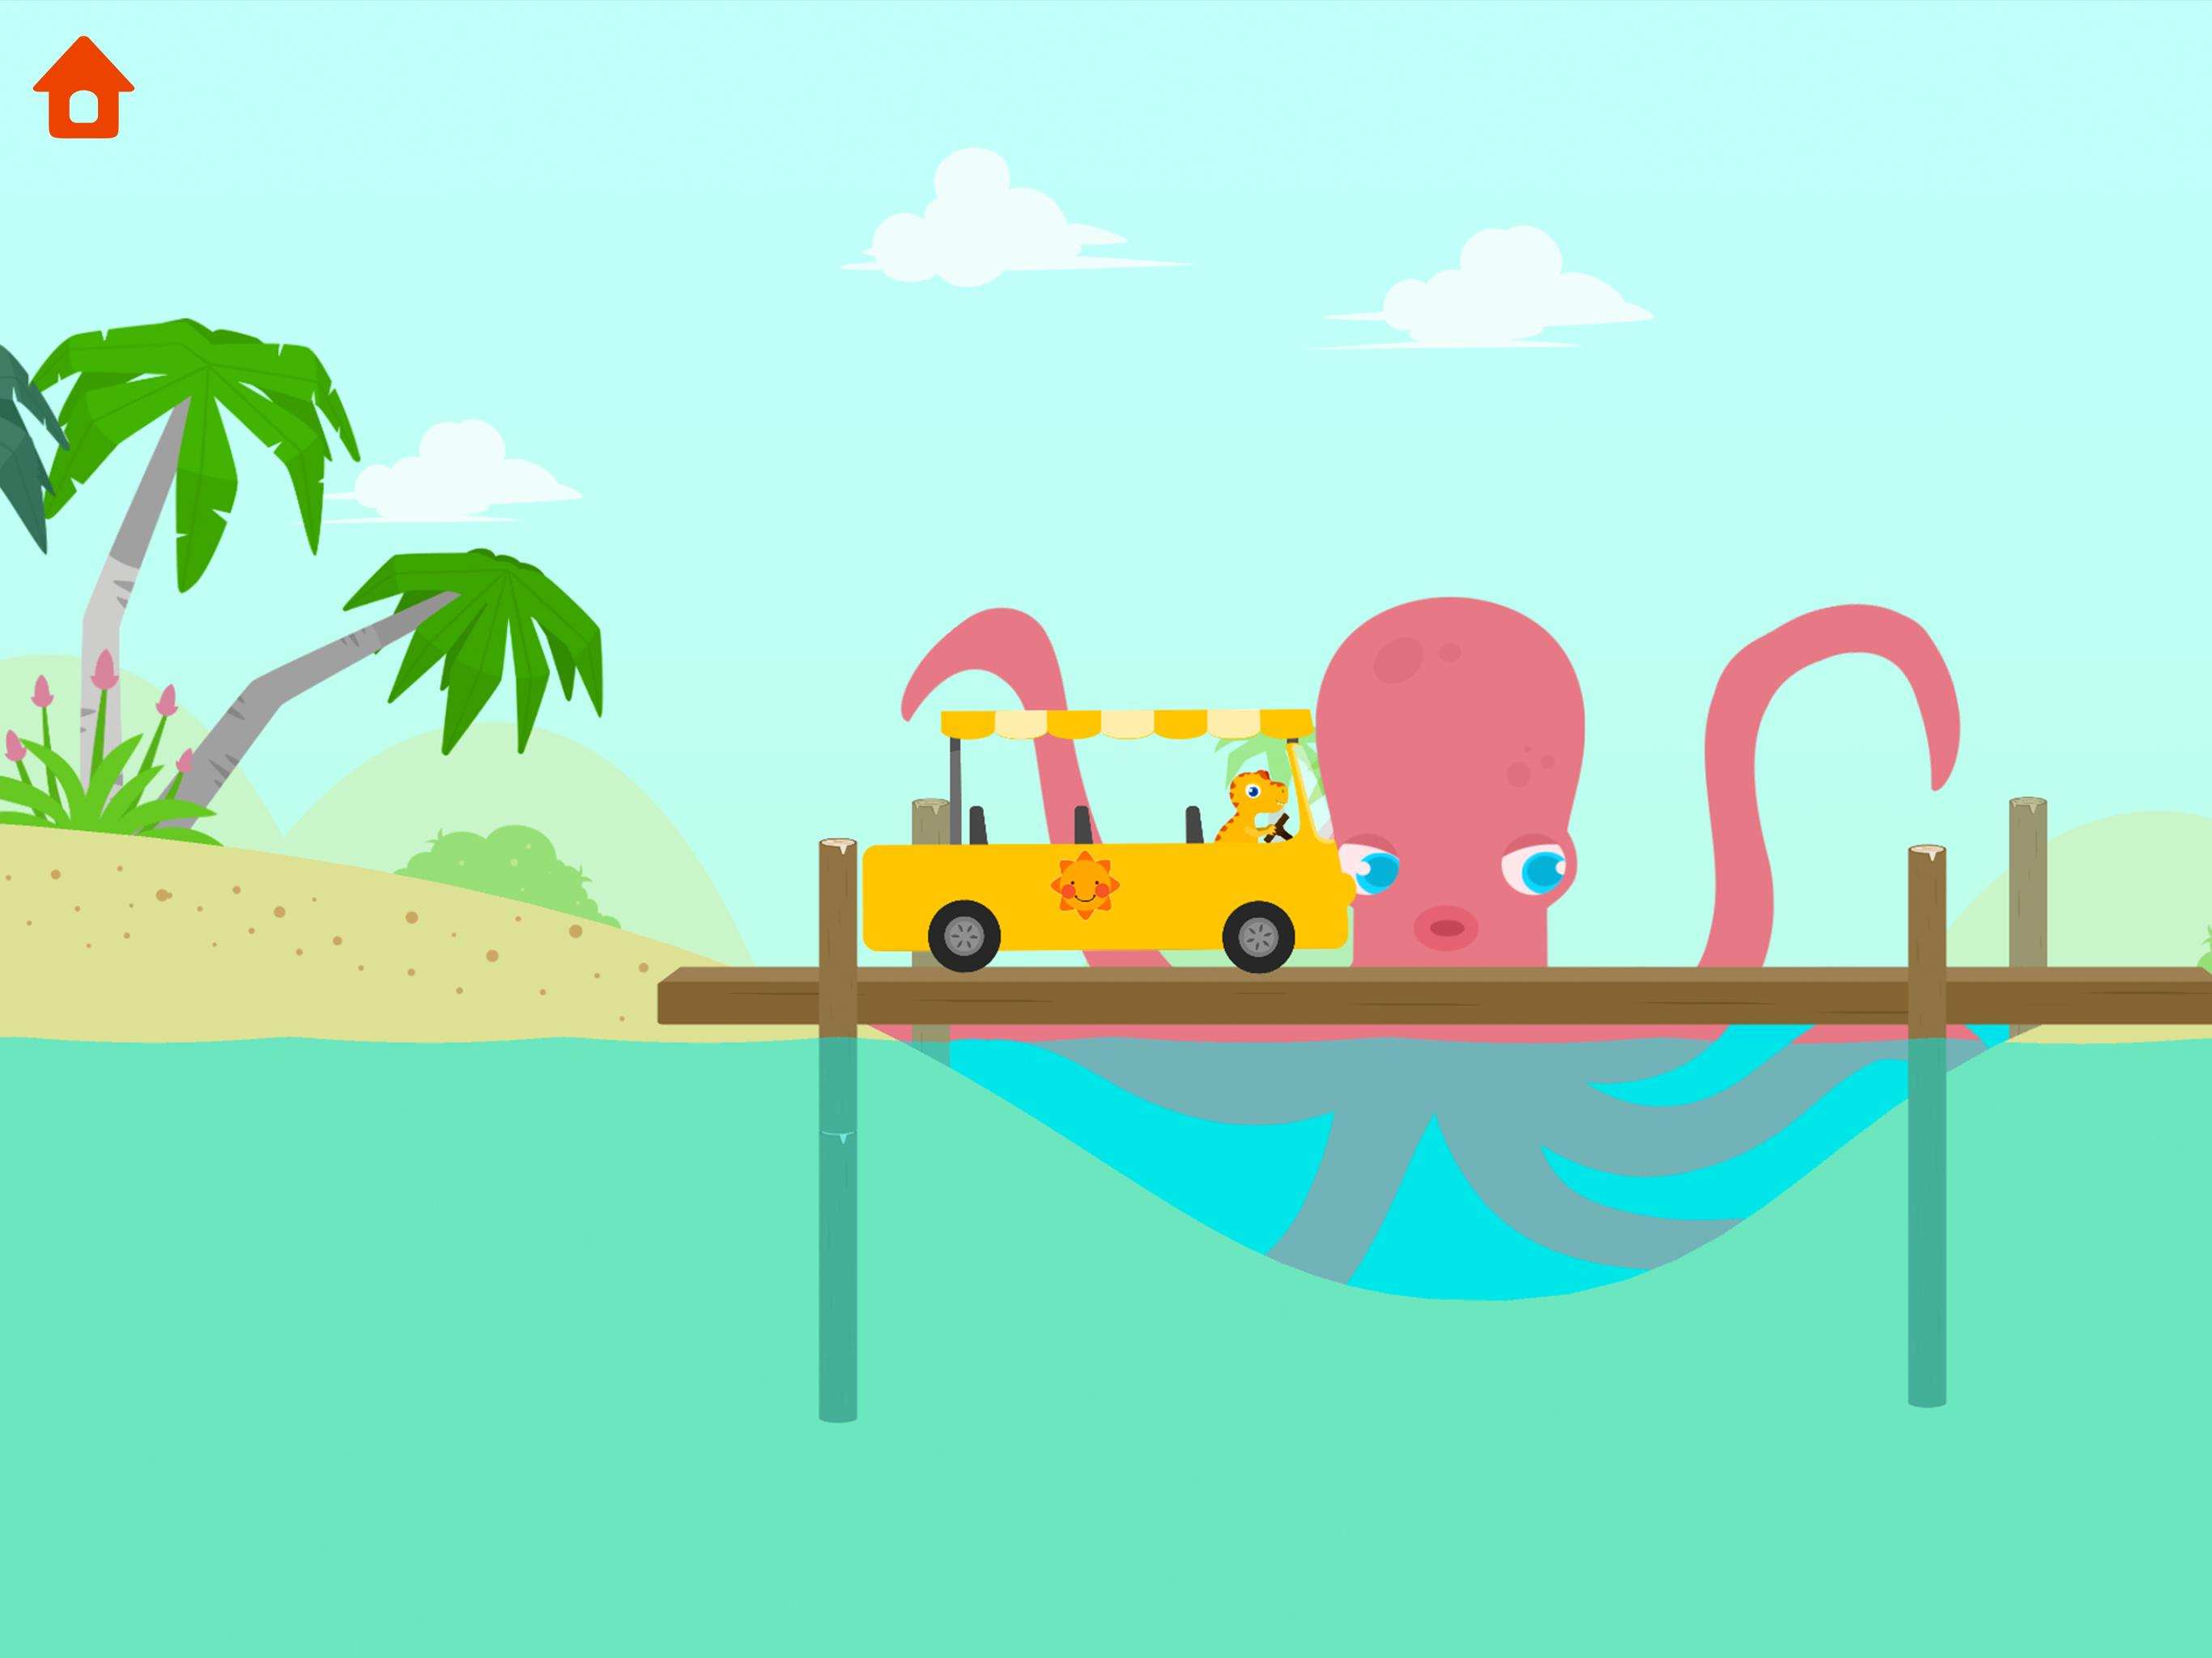 Dinosaur Bus - Create a Car! Games for kids 1.0.7 Screenshot 14